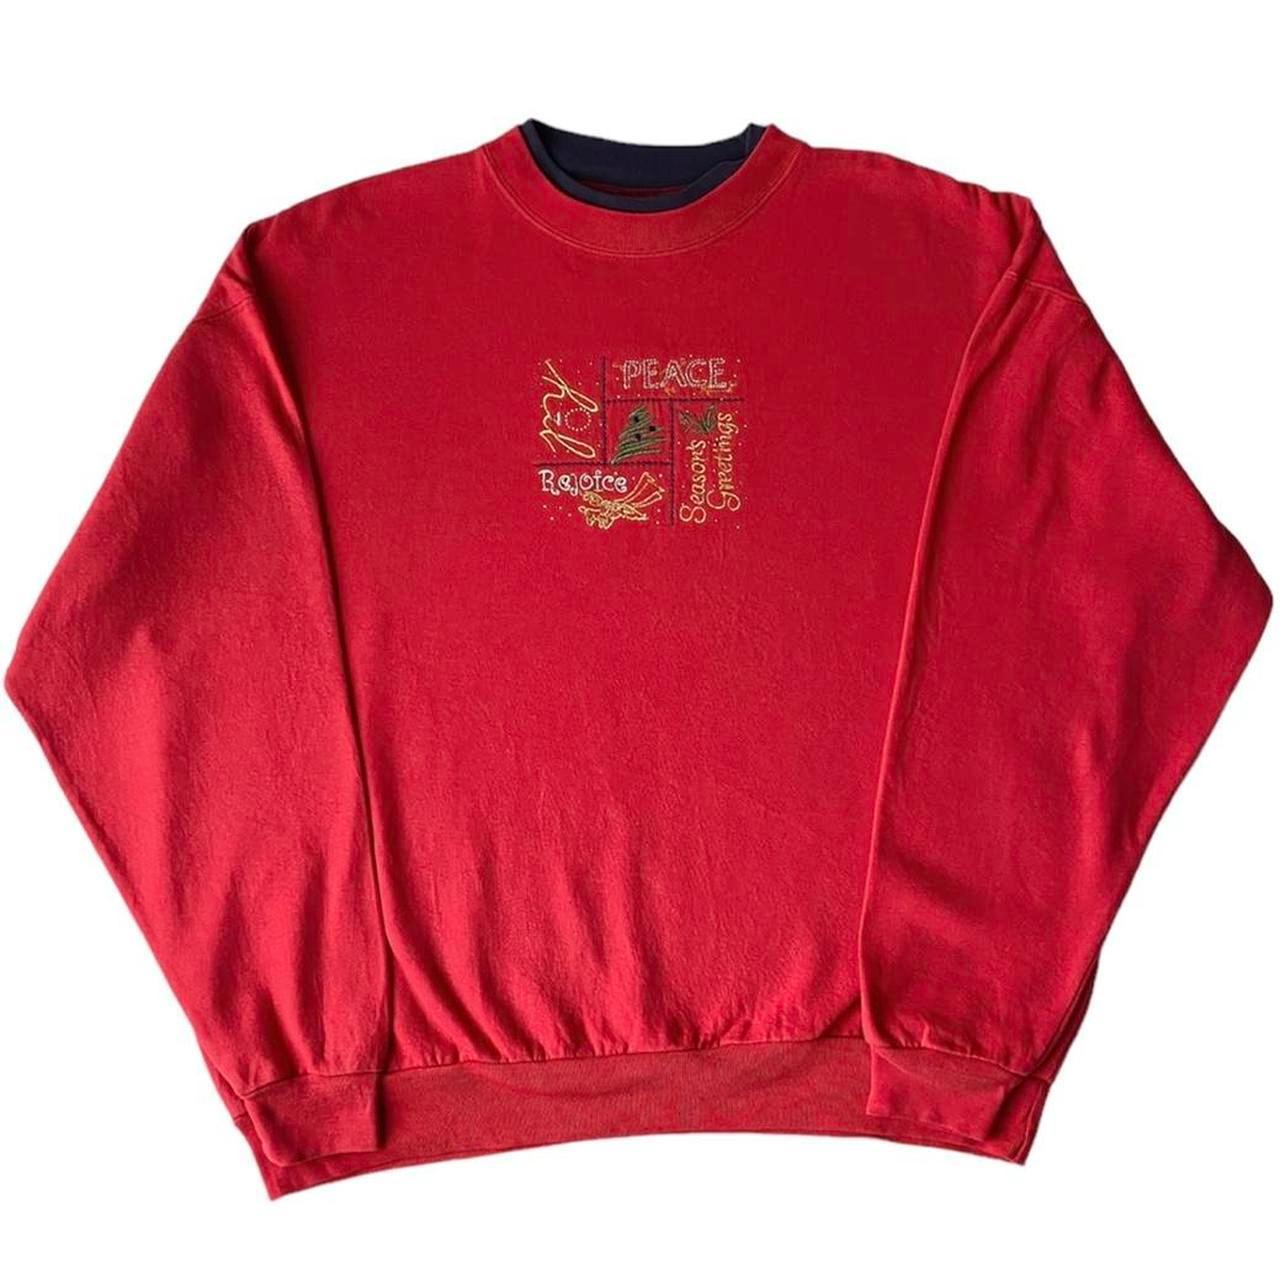 Season's Greetings Christmas Sweatshirt - red... - Depop